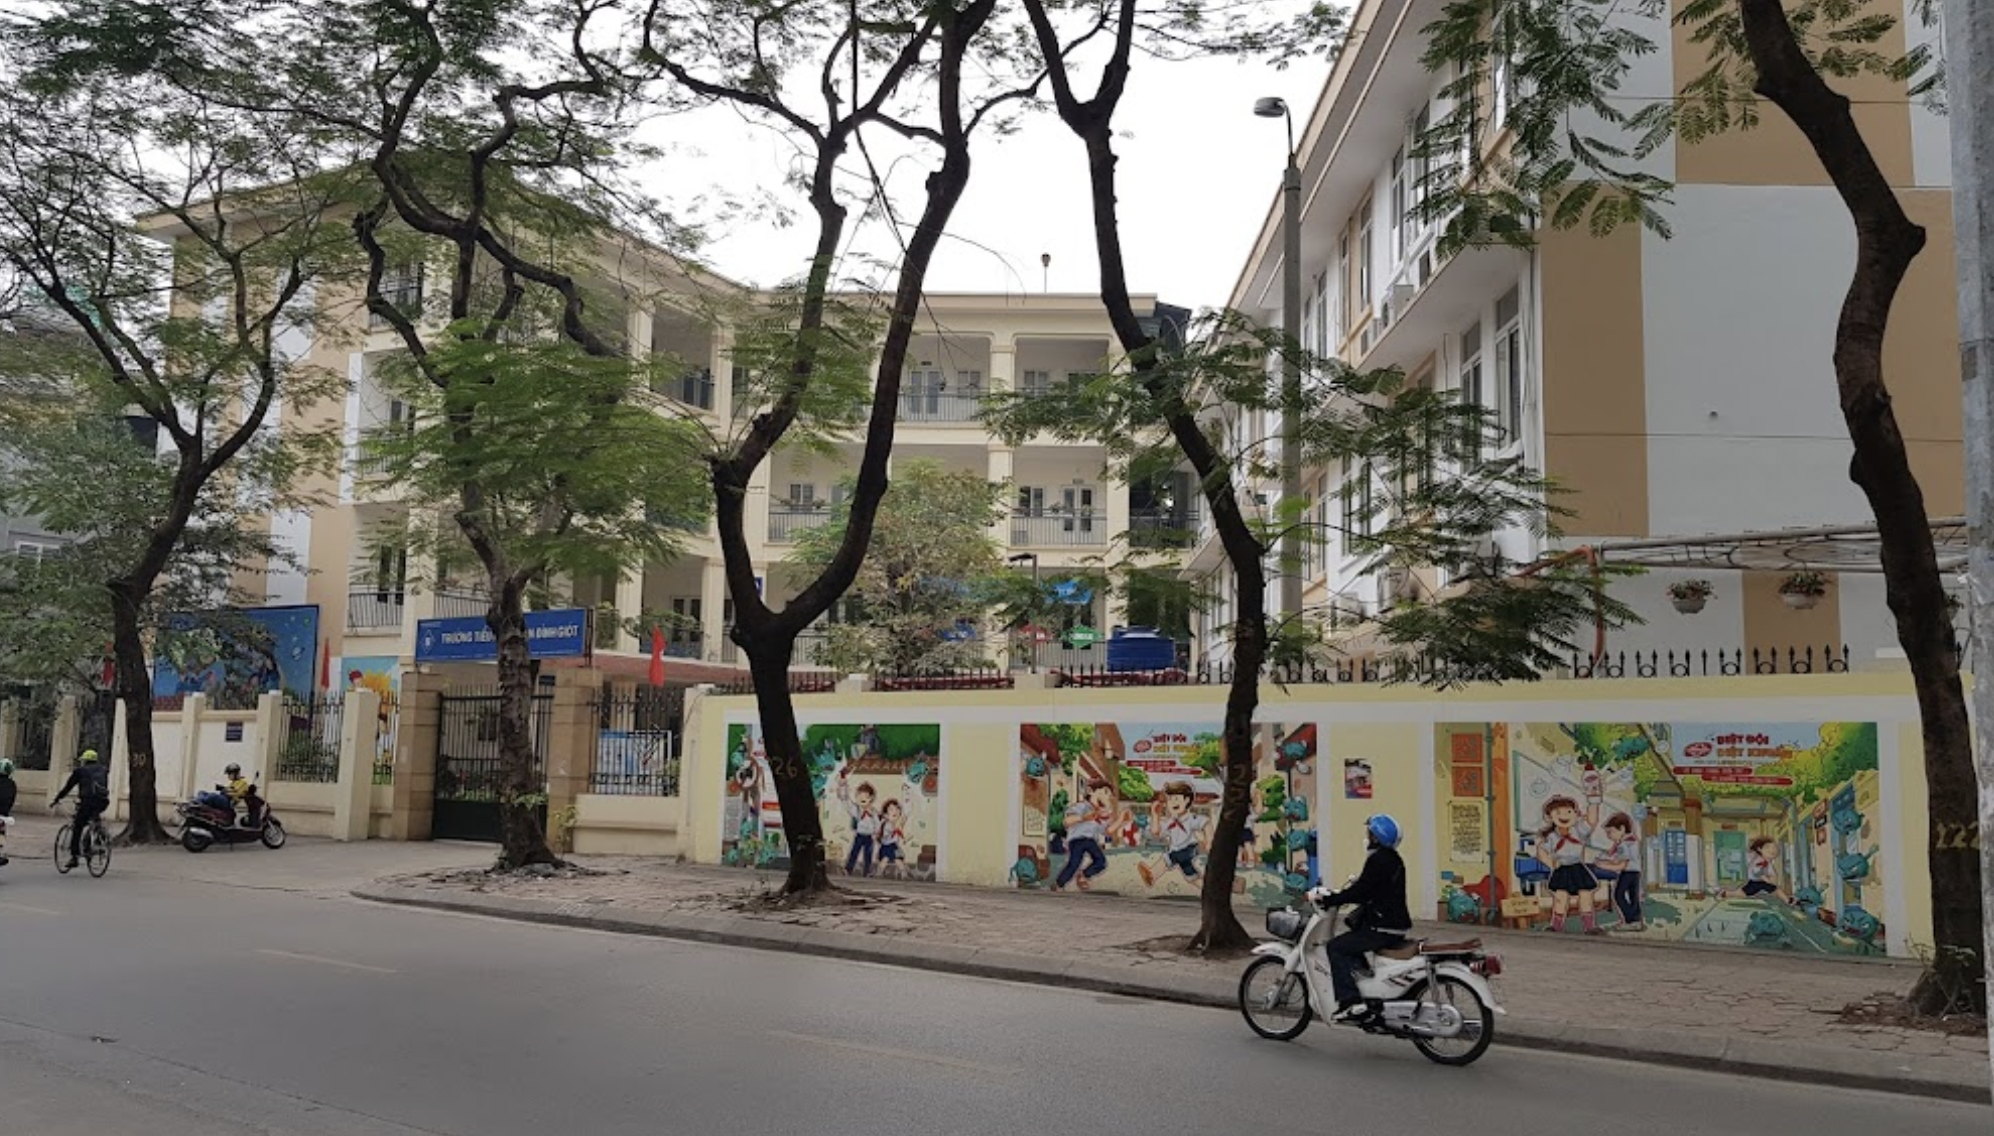 Vụ chủ nợ giả người nhà đón học sinh lớp 2 ở Hà Nội: Công an và nhà trường tăng cường an ninh - Ảnh 1.